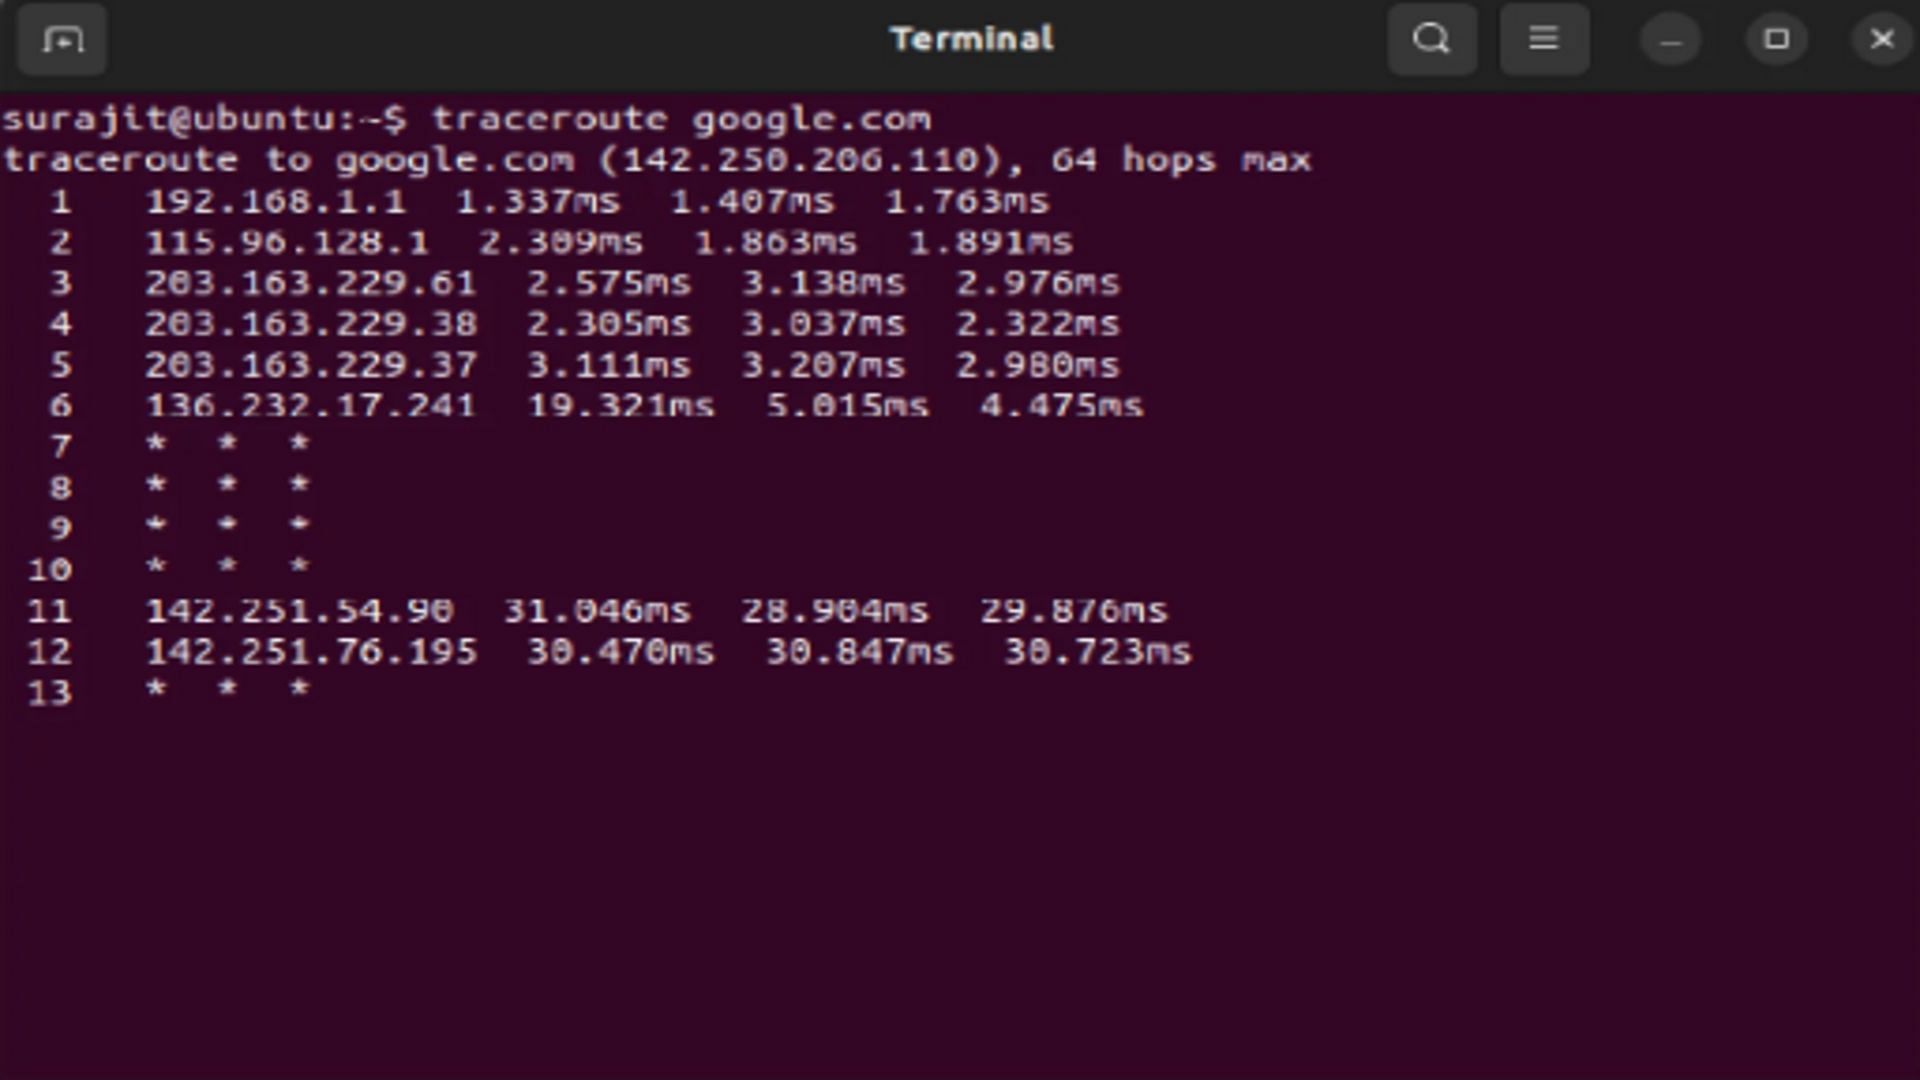 traceroute command (Image via Ubuntu)